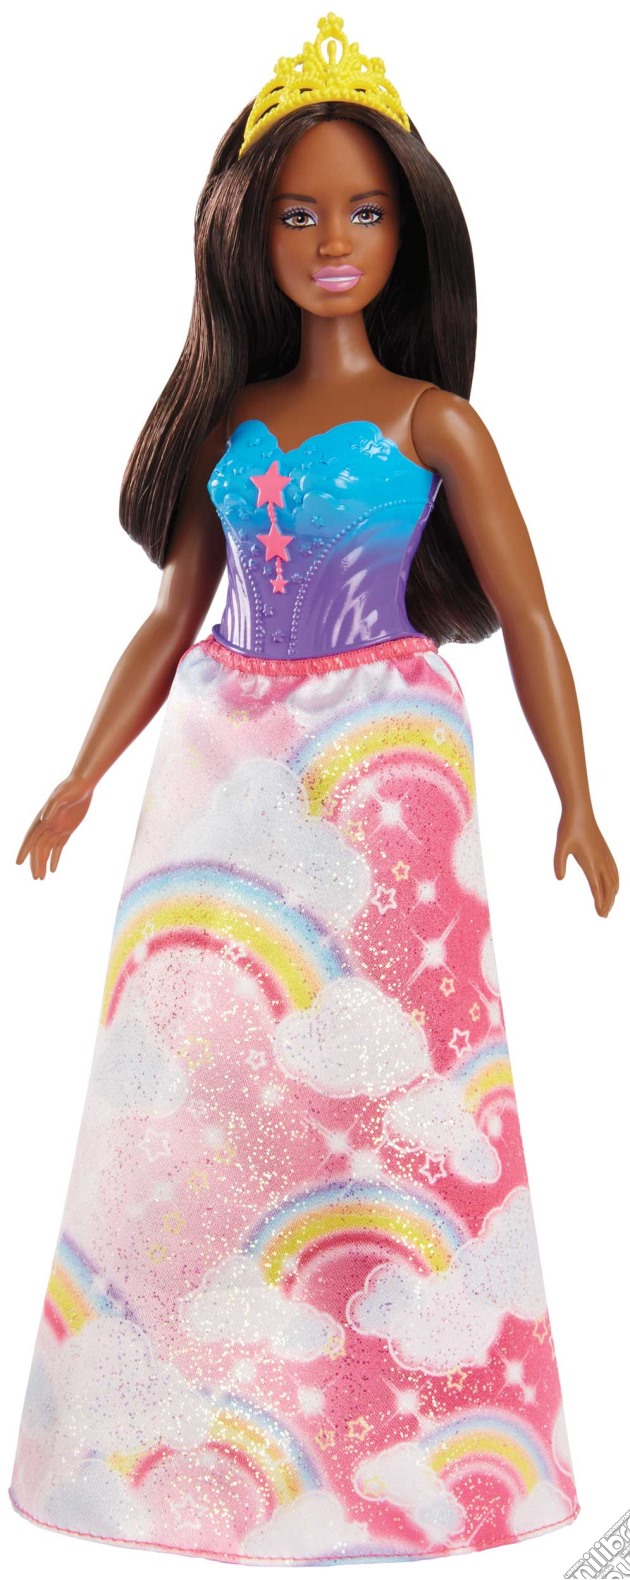 Mattel FJC98 - Barbie - Dreamtopia - Principessa Curvy gioco di Mattel